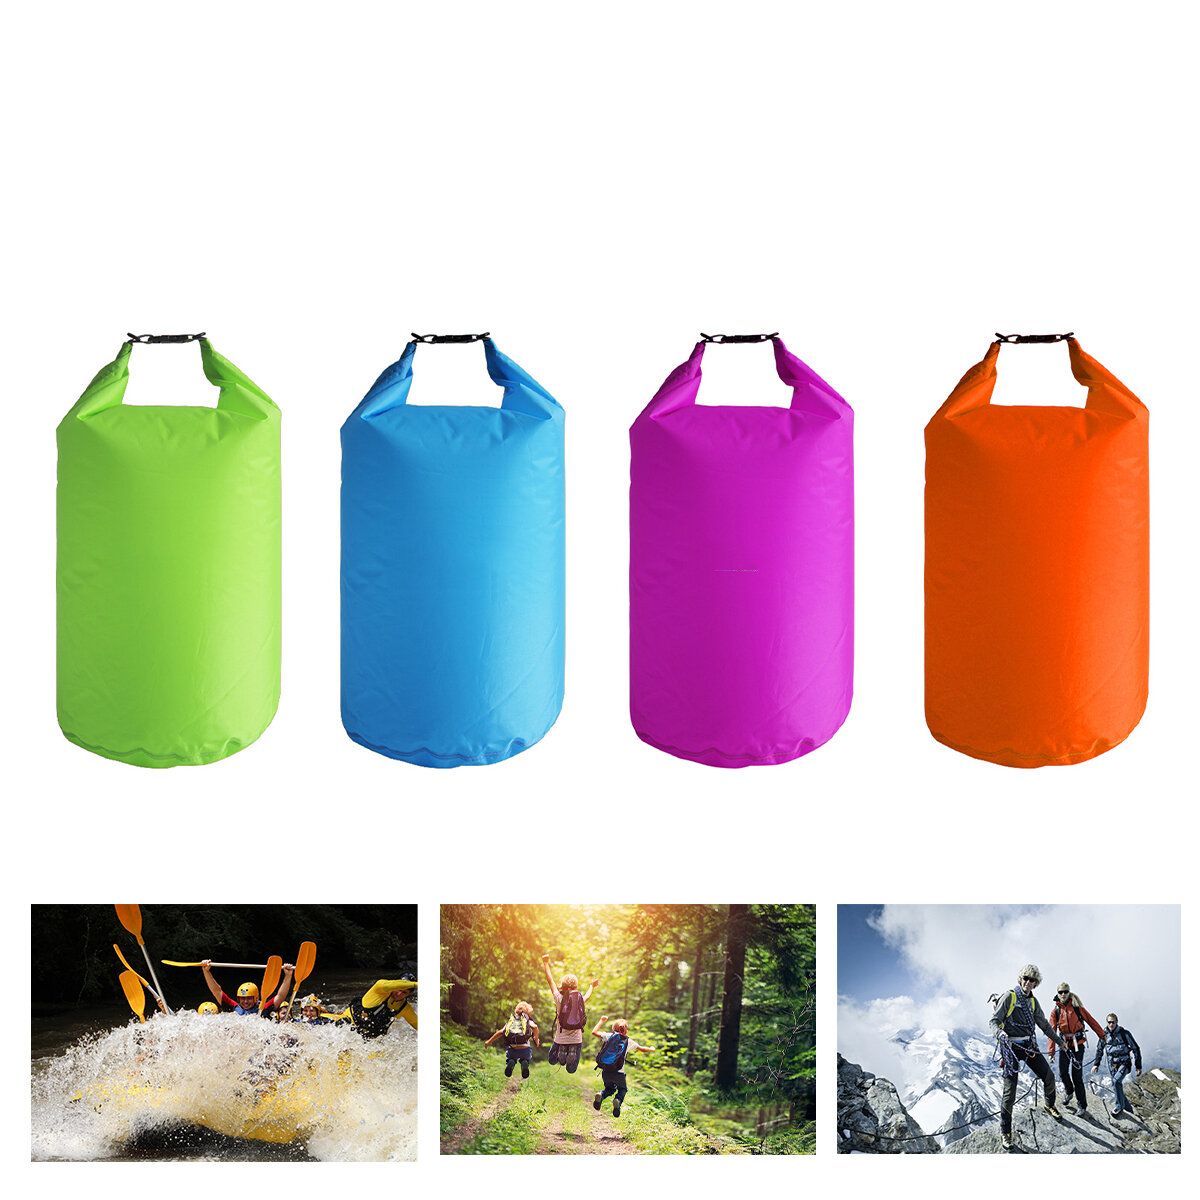 Bolsa impermeable flotante de 5L para almacenamiento, mochila para acampar, viajar, hacer kayak, canotaje, pesca, vela y deriva